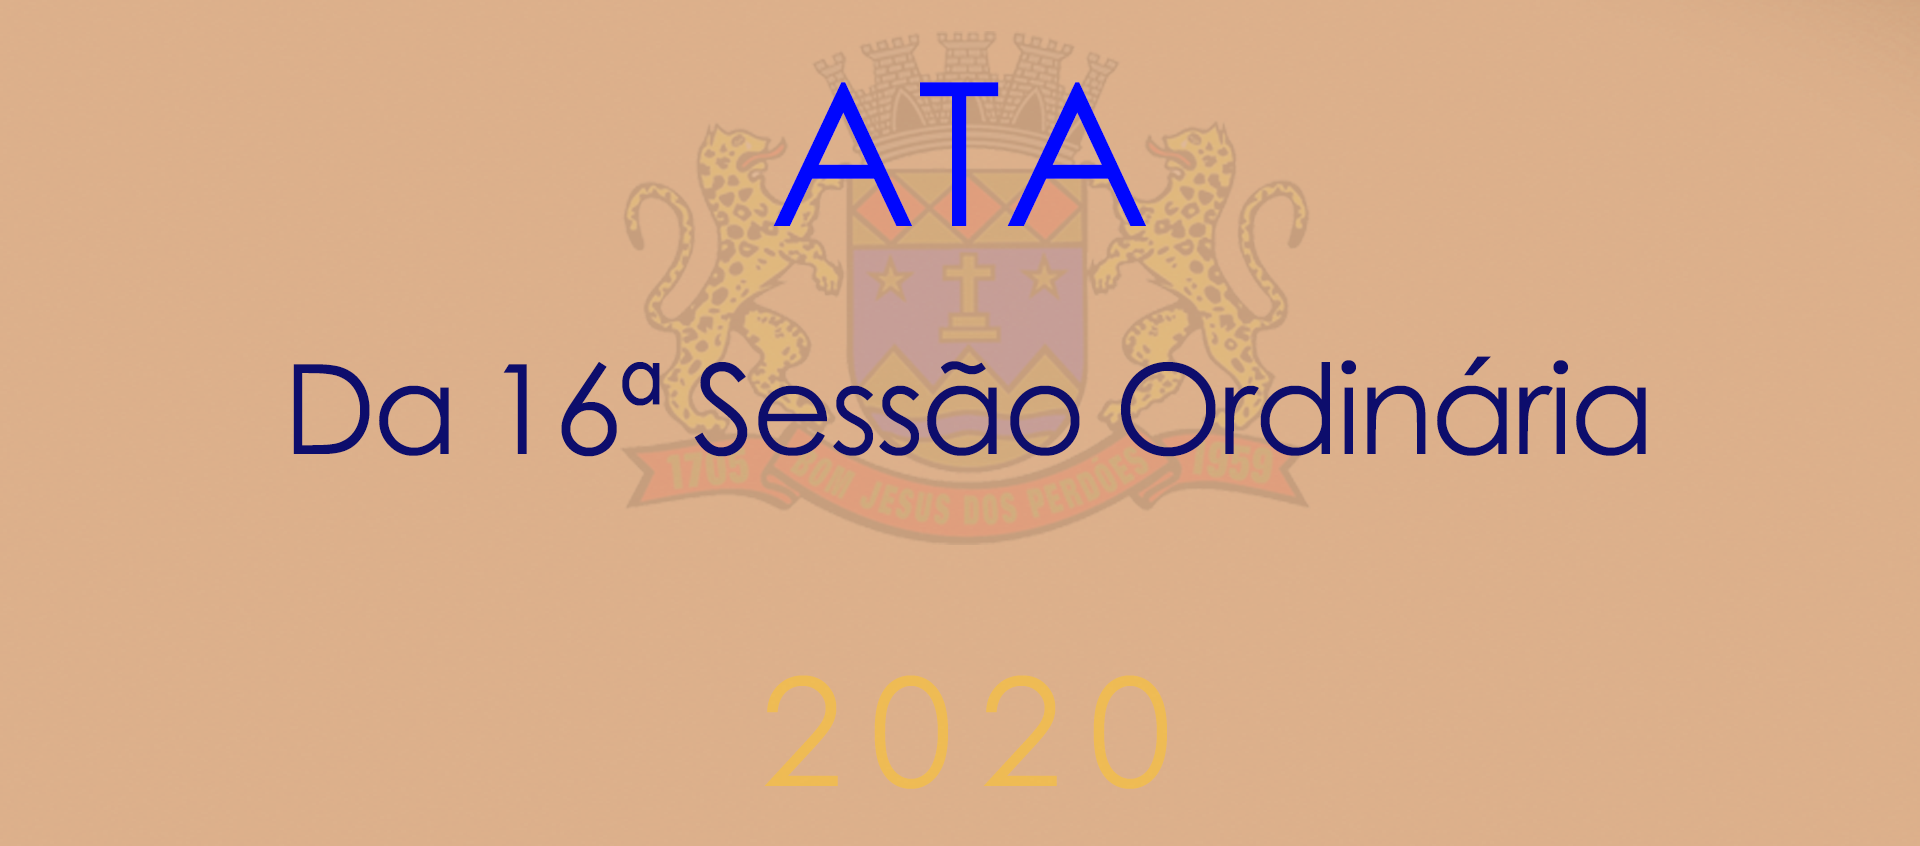 Ata da 16ª Sessão Ordinária - 2020